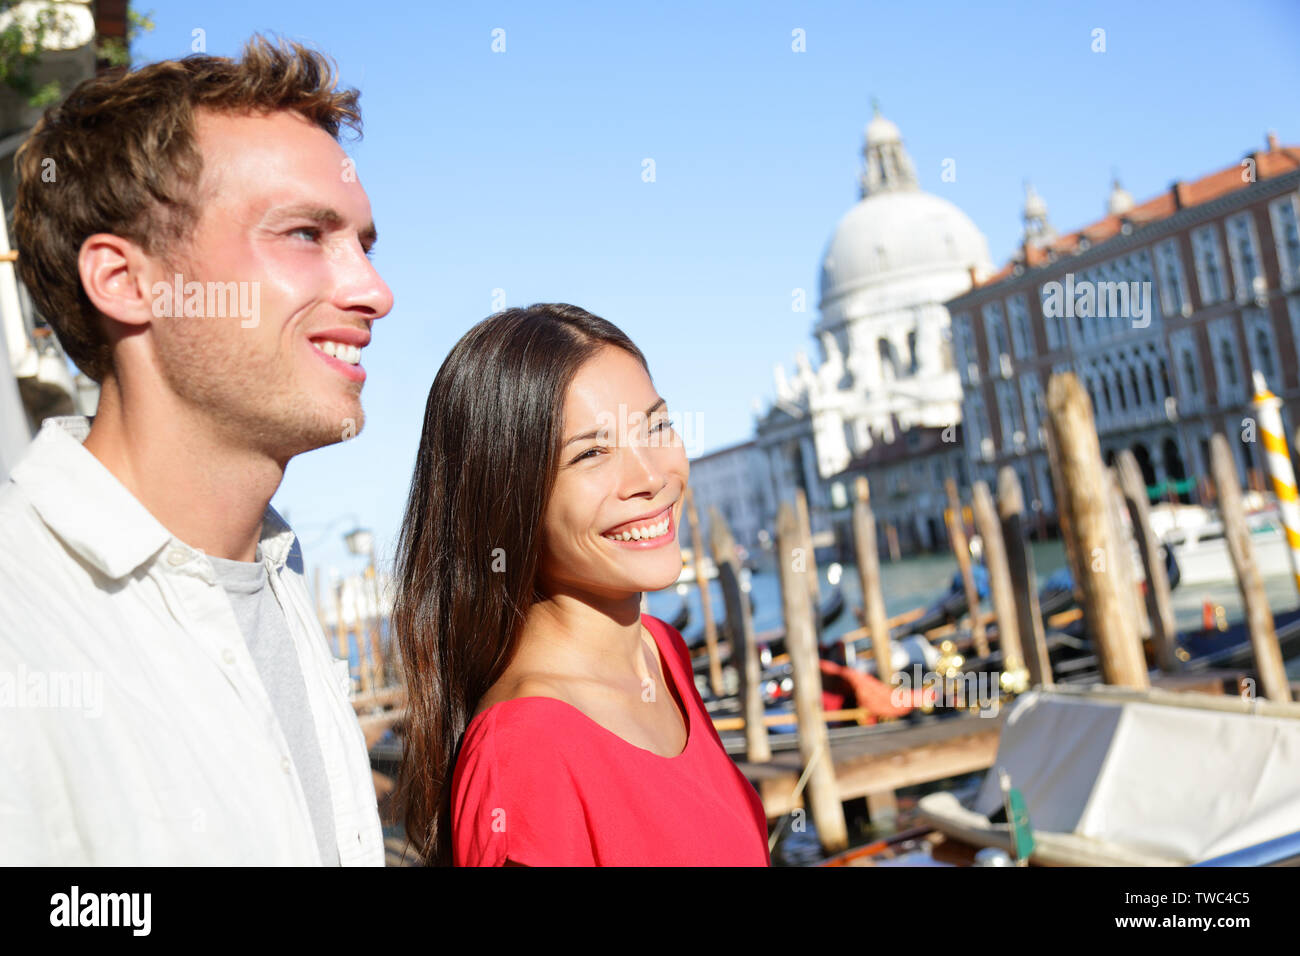 Personnes à Venise. Couple in love voyageant à Venise, Italie autour de un canal avec les bateaux. Happy young couple sur les voyages vacances en Europe. Asian Woman and Caucasian man. Banque D'Images